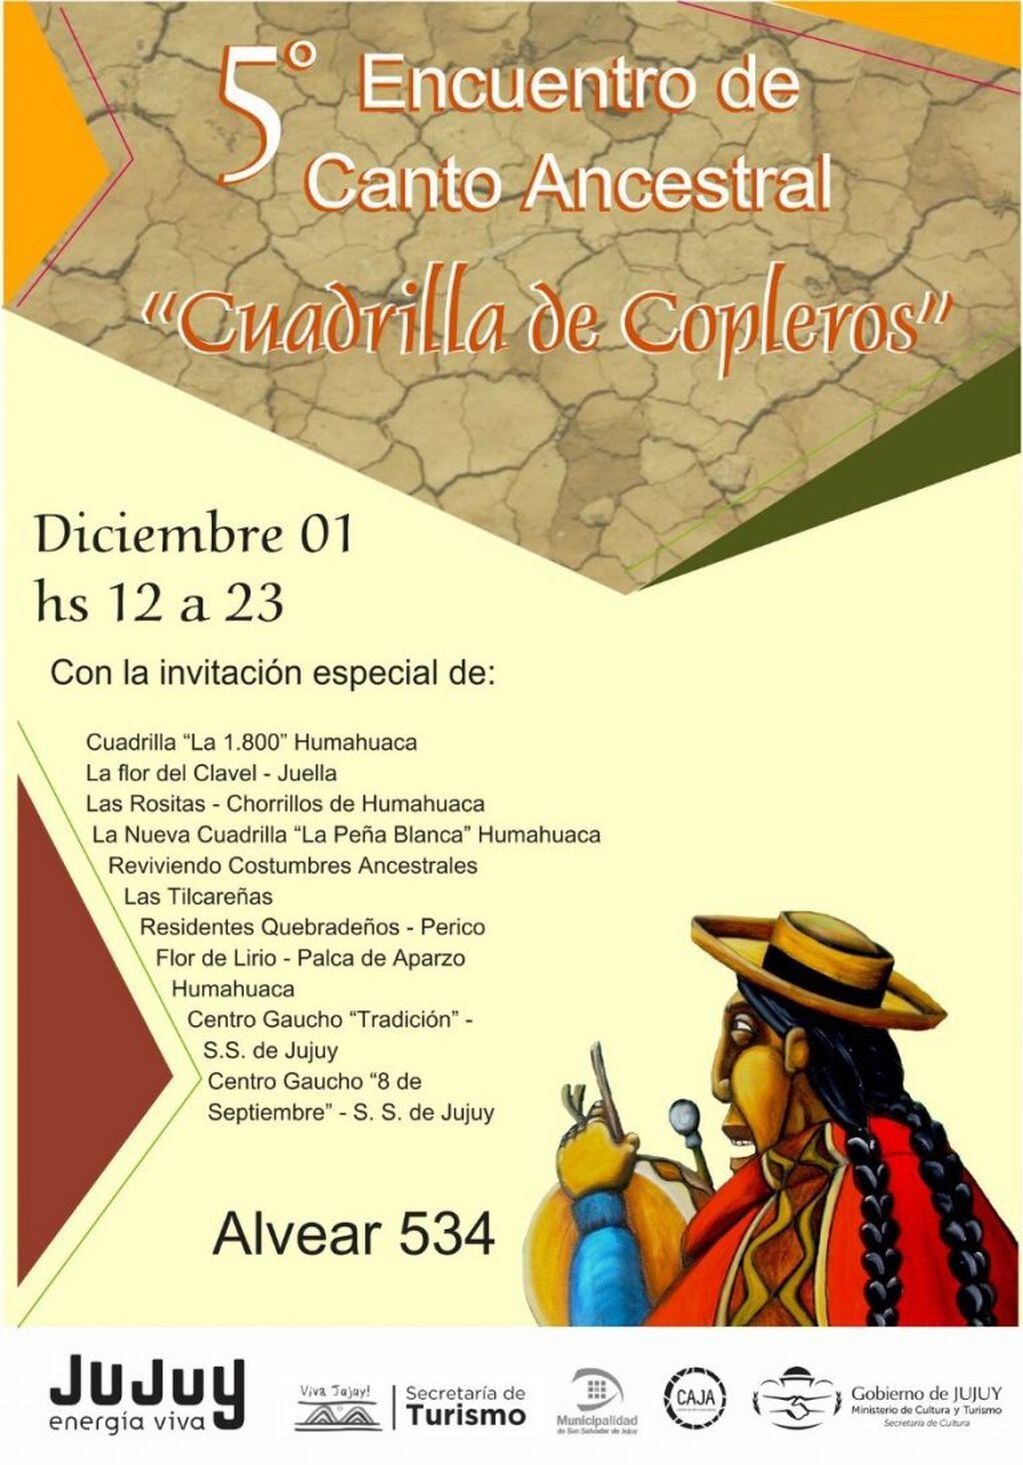 Afiche promocional del encuentro "Cuadrilla de copleros" a realizarse en el CAJA.